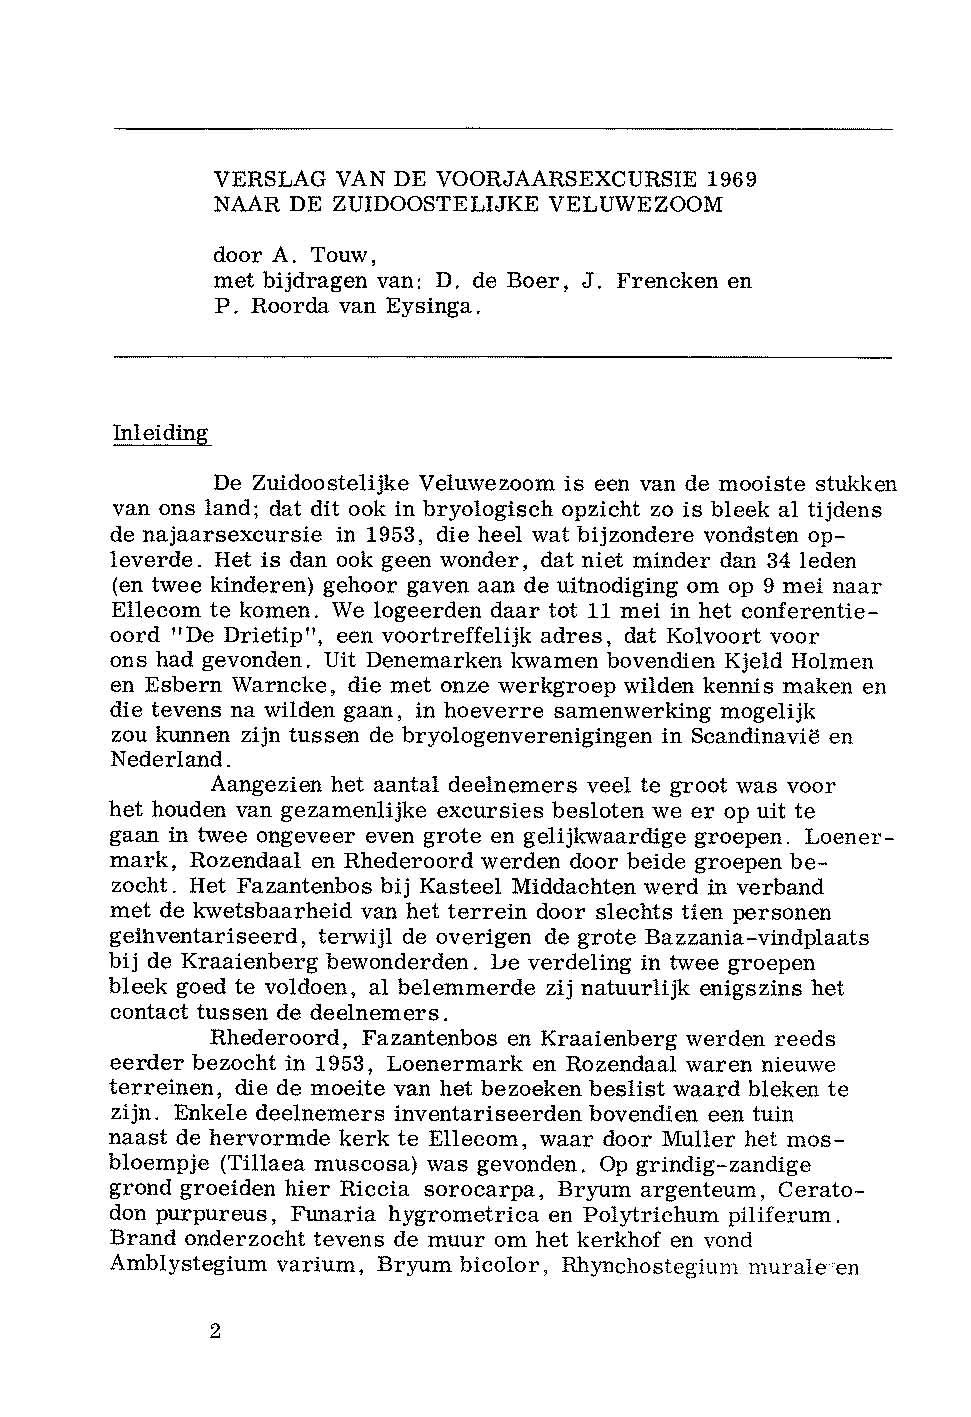 VERSLAG VAN DE VOORJAARSEXCURSIE 1969 NAAR DE ZUXDOOSTELIJKE VELUWEZOOM door A. Touw, met bijdragen van: D, de Boer, J. Frencken en P. Roorda van Eysinga.